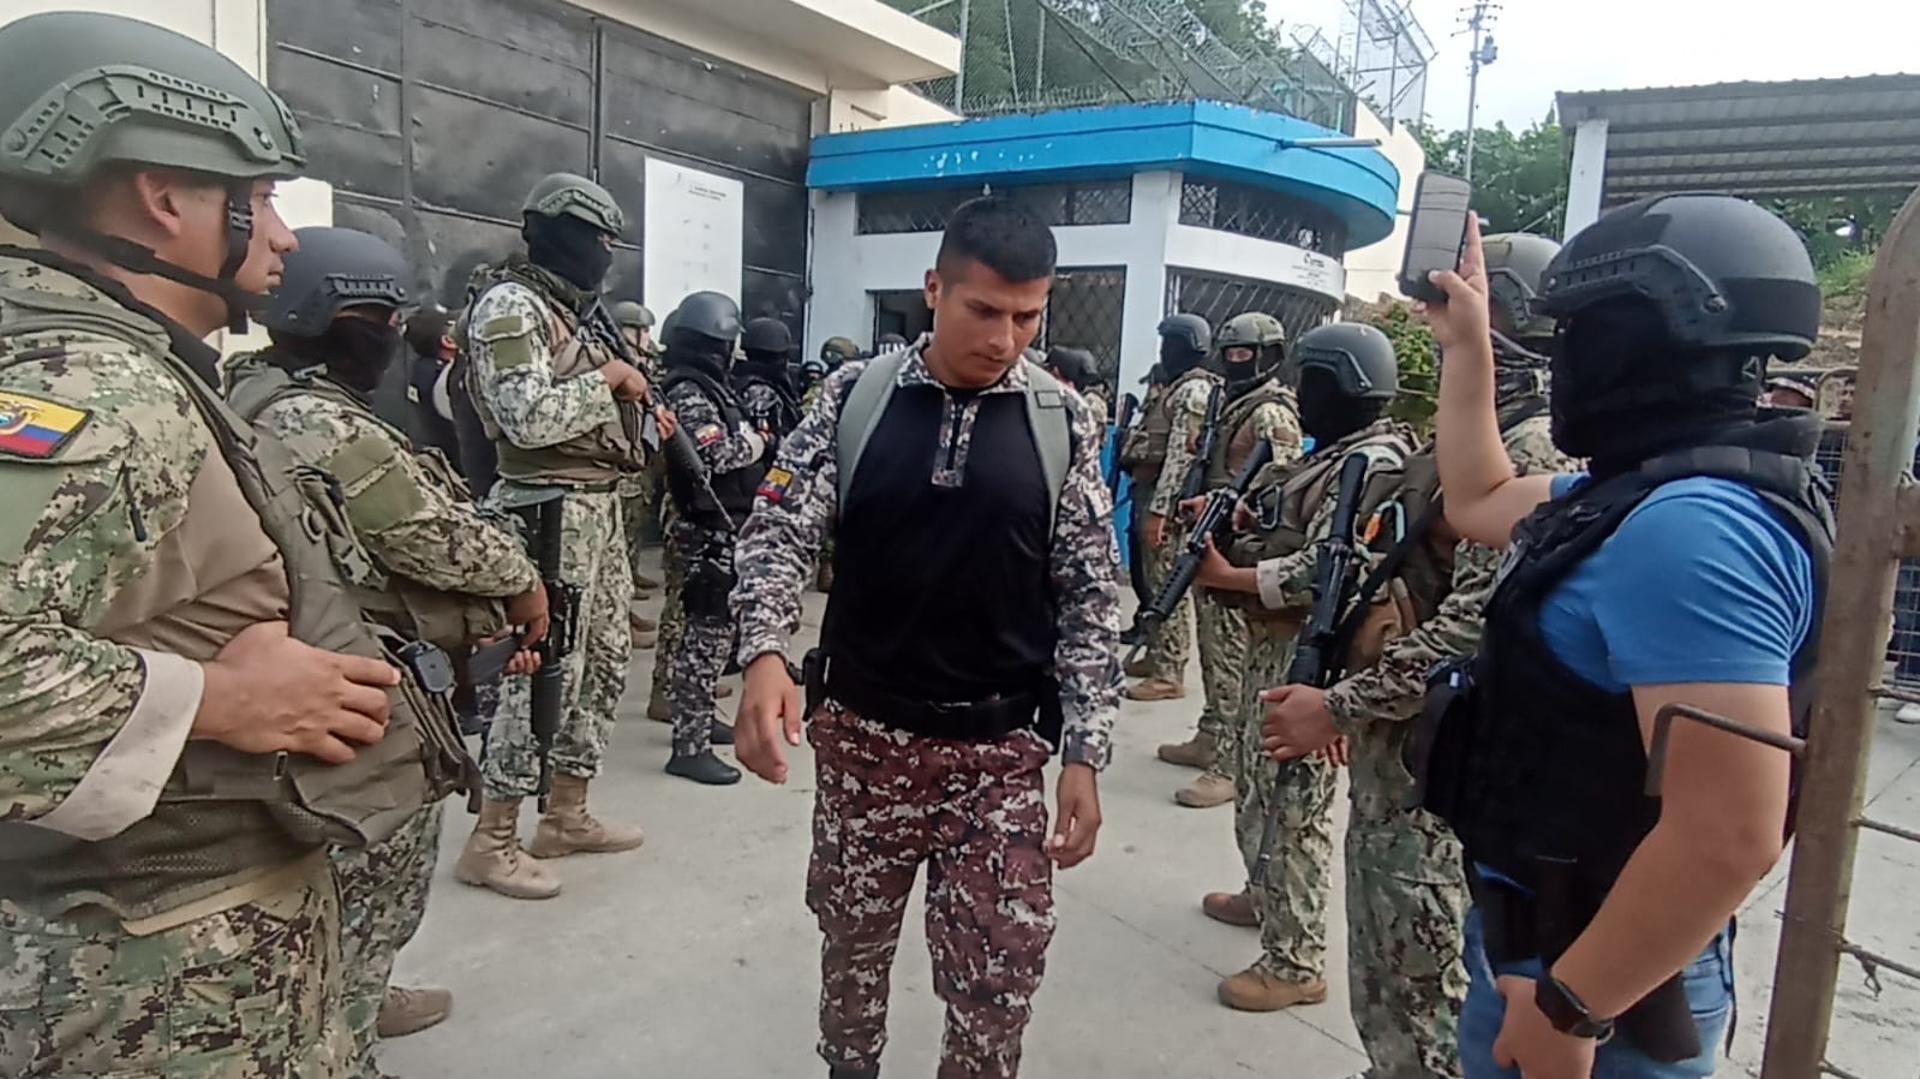 Fotografía cedida por las Fuerzas Armadas de Ecuador de la liberación de funcionarios de una prisión hoy, en la provincia costera de Esmeraldas (Ecuador). EFE/ Fuerzas Armadas De Ecuador